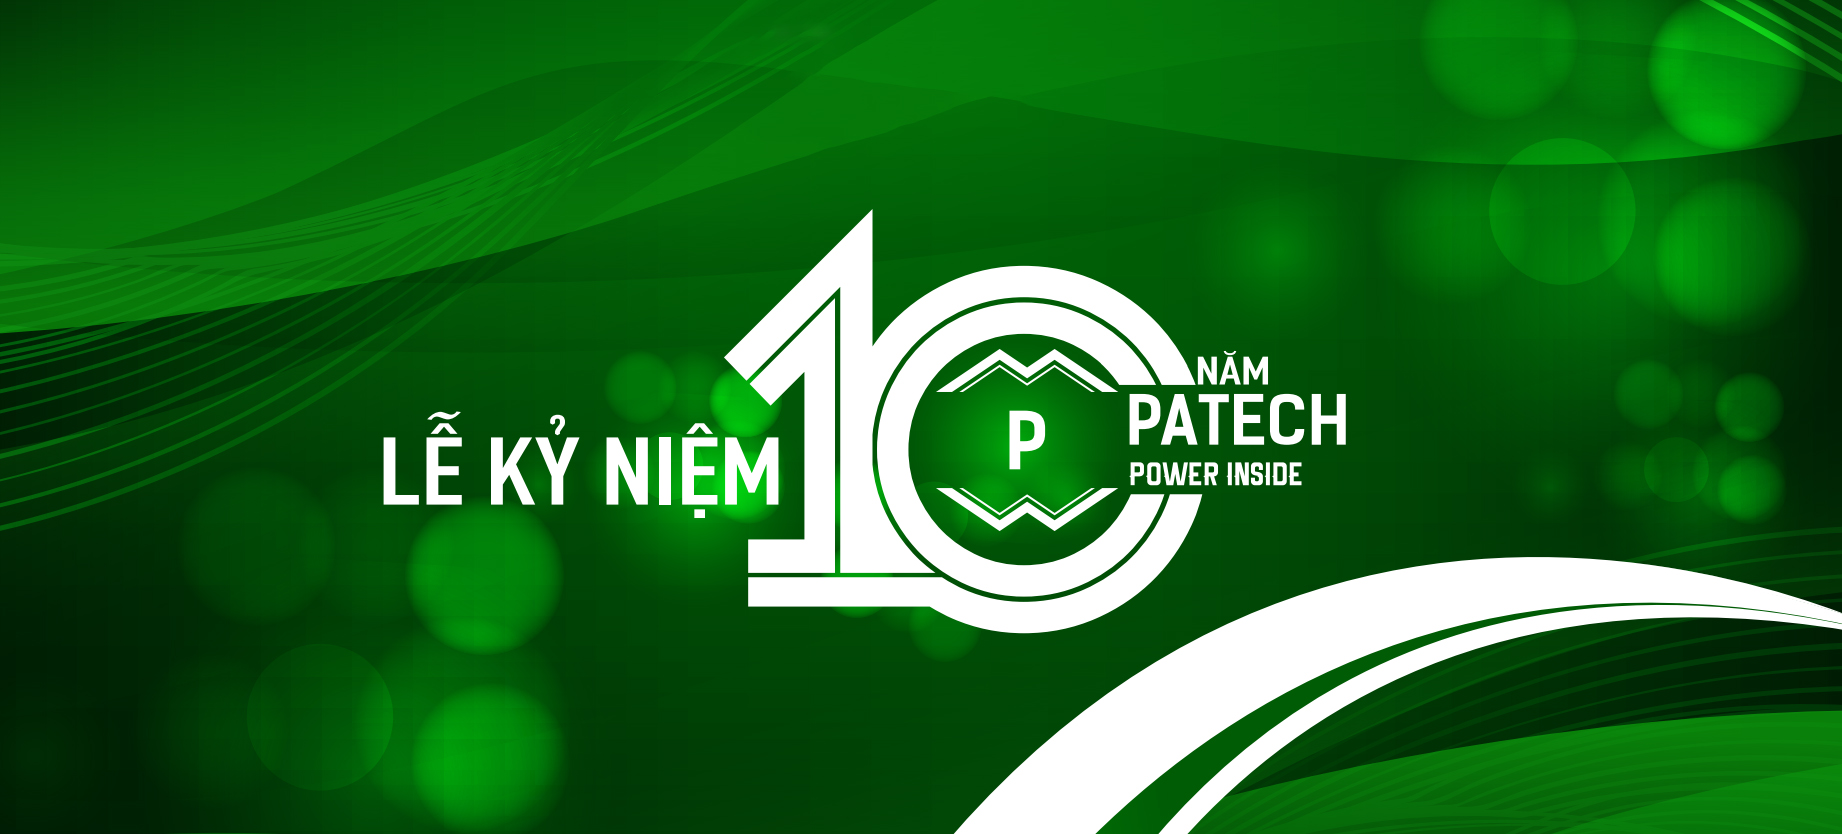 Lễ kỷ niệm 10 năm thành lập công ty PATECH